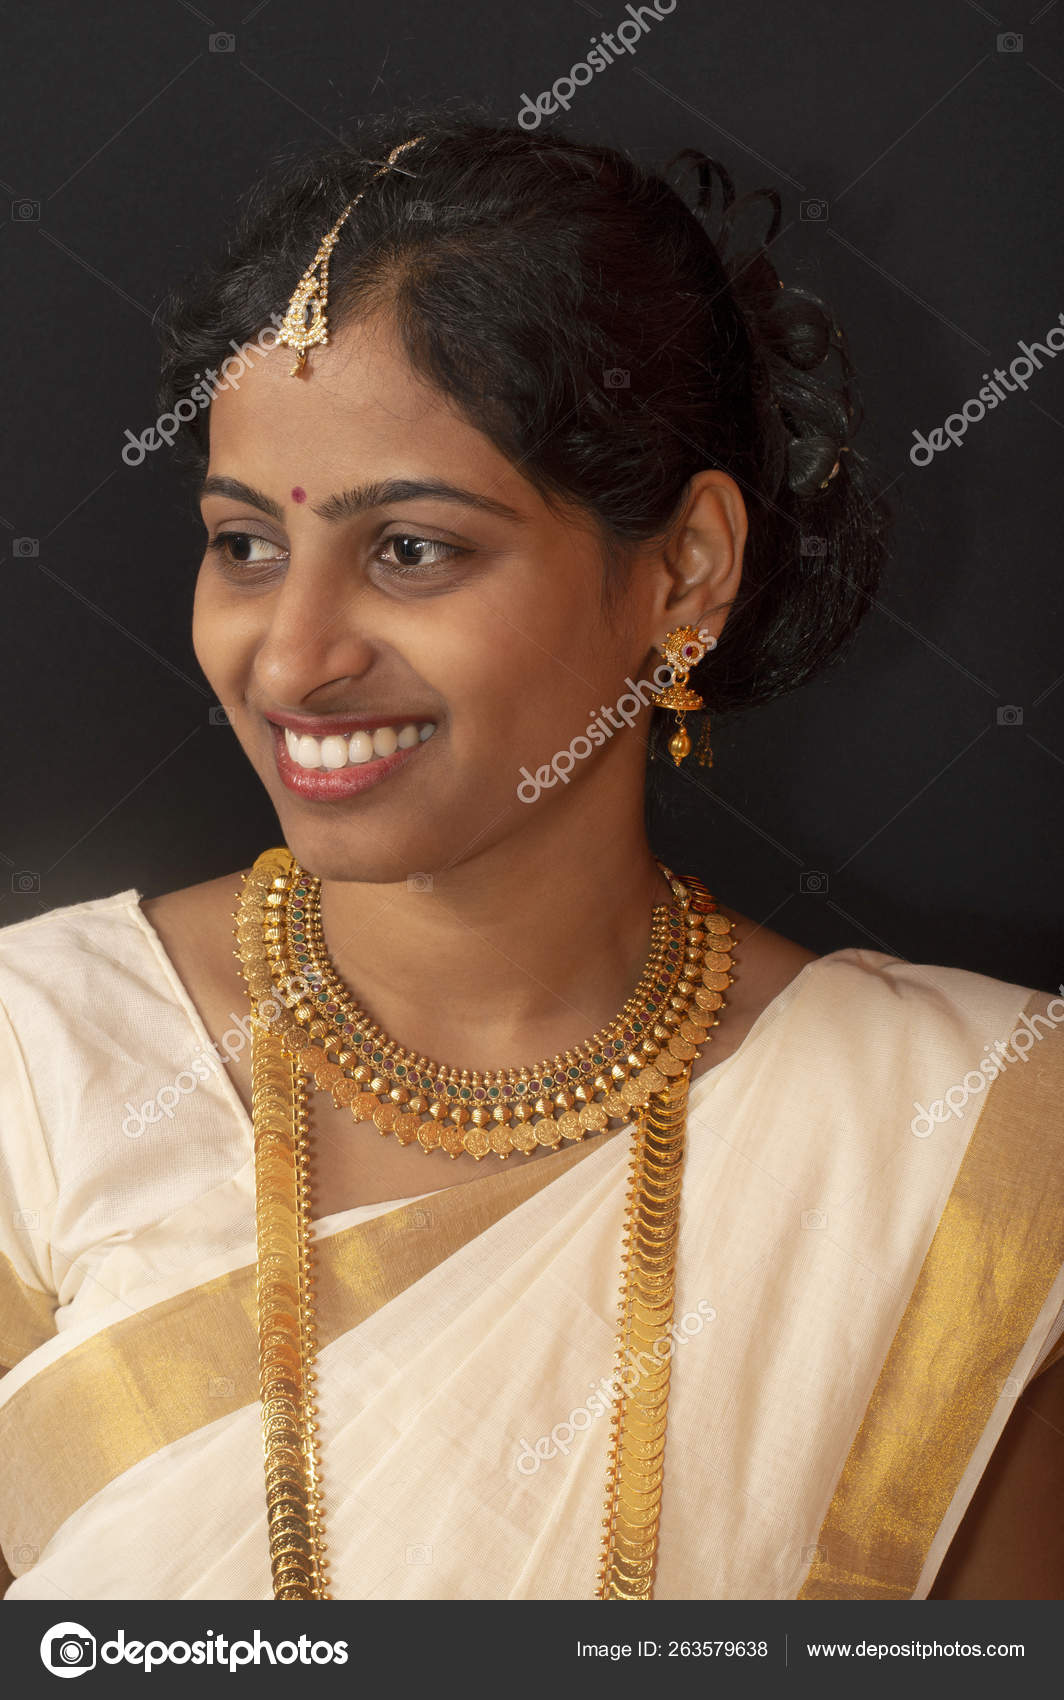 Kerala saree Stock Photos, Royalty Free Kerala saree Images | Depositphotos